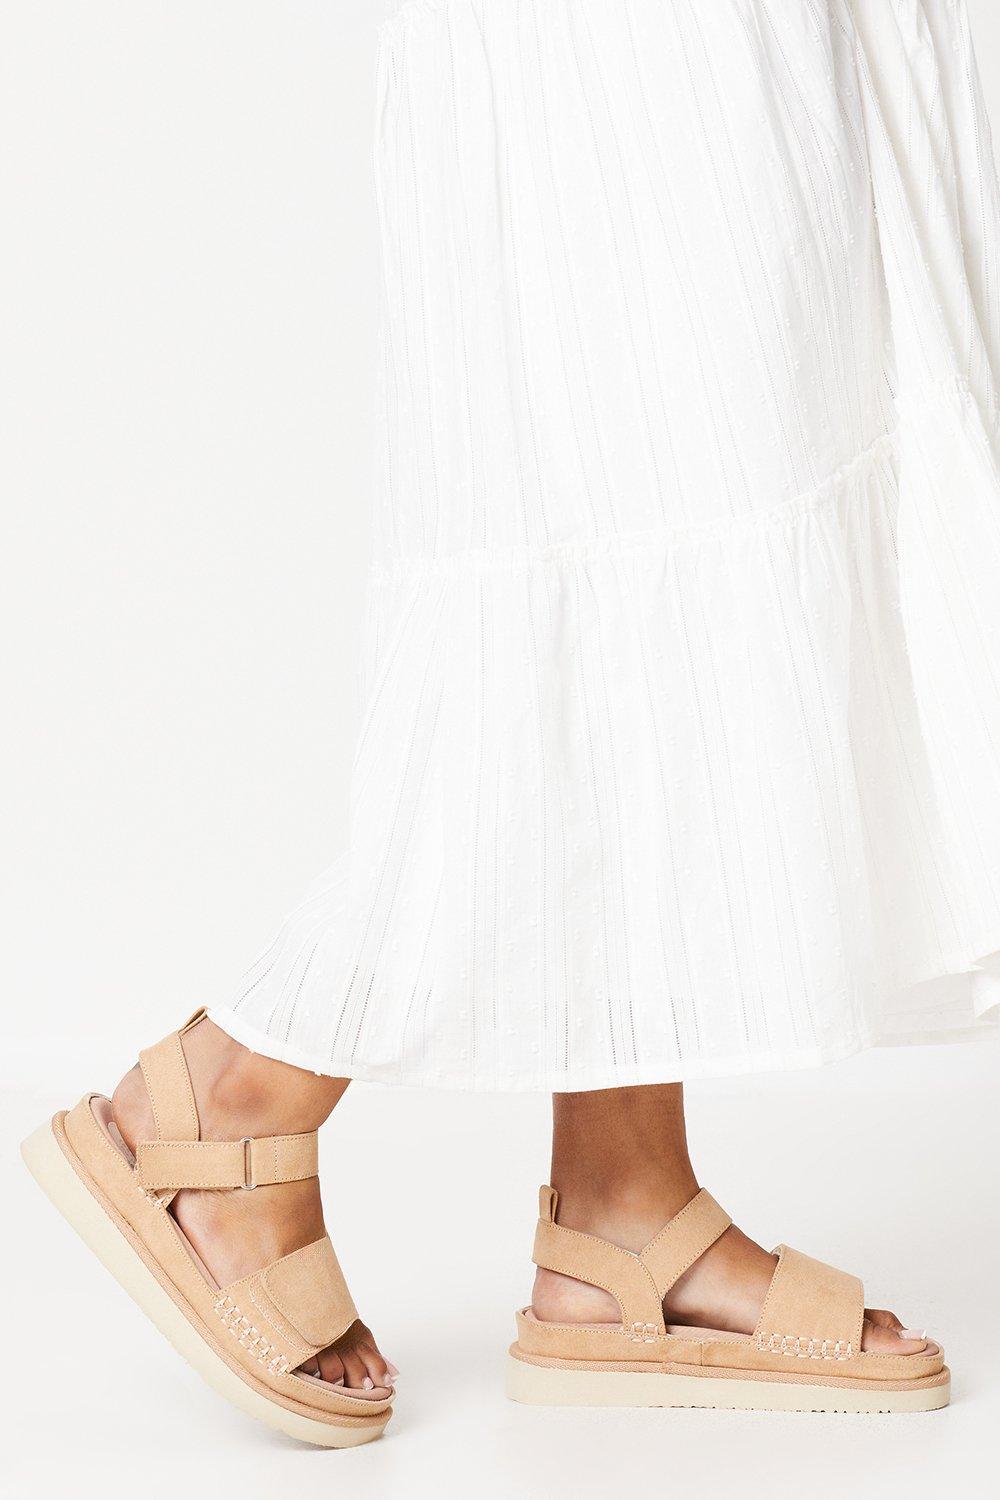 Women’s Good For The Sole: Wide Fit Magnus Comfort Flatform Adjustable Strap Sandals - beige - 7